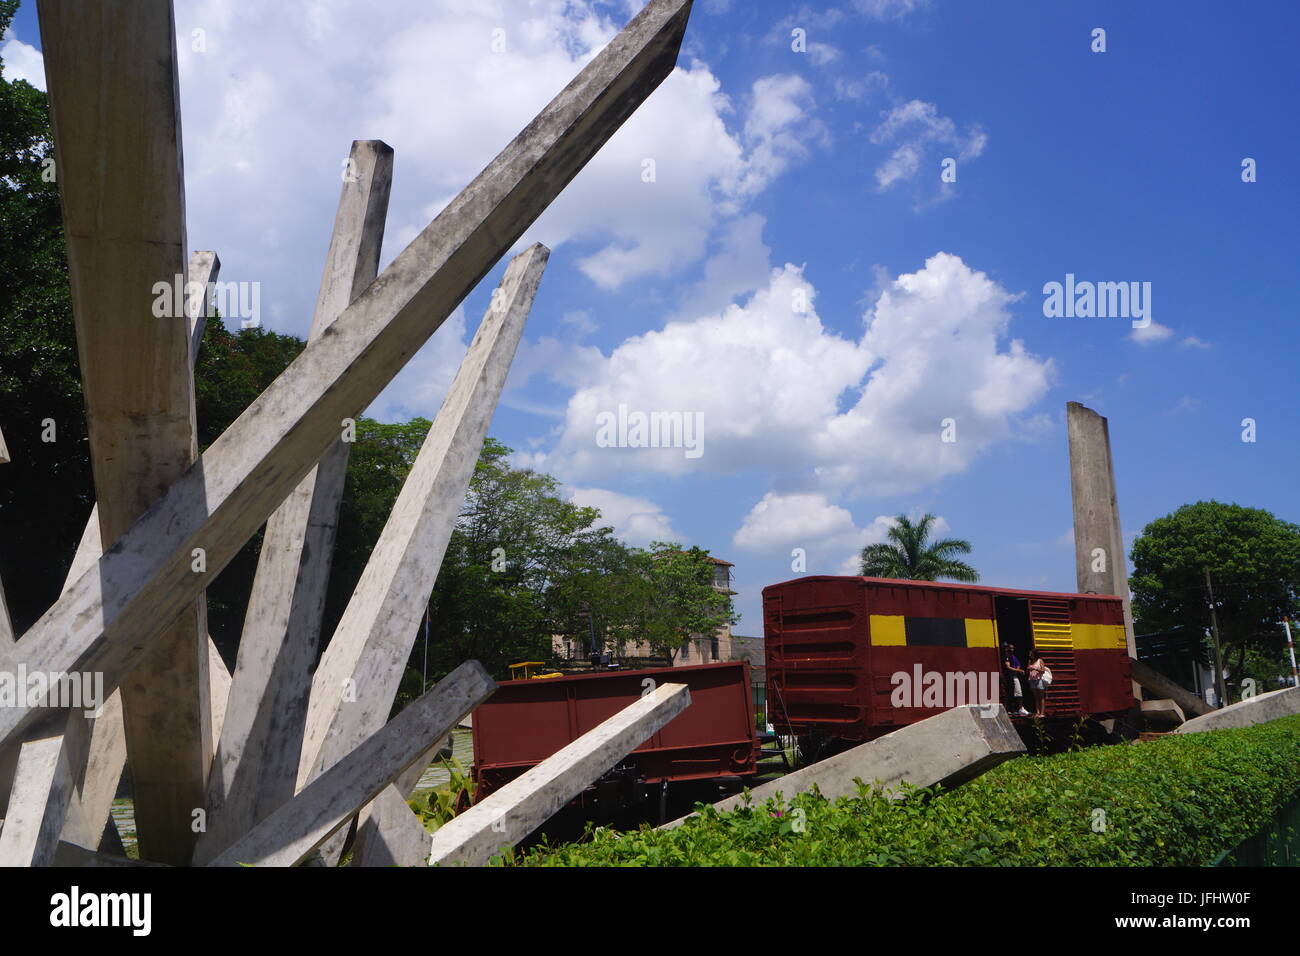 Tren Blindado monument,Santa Clara, Cuba Stock Photo